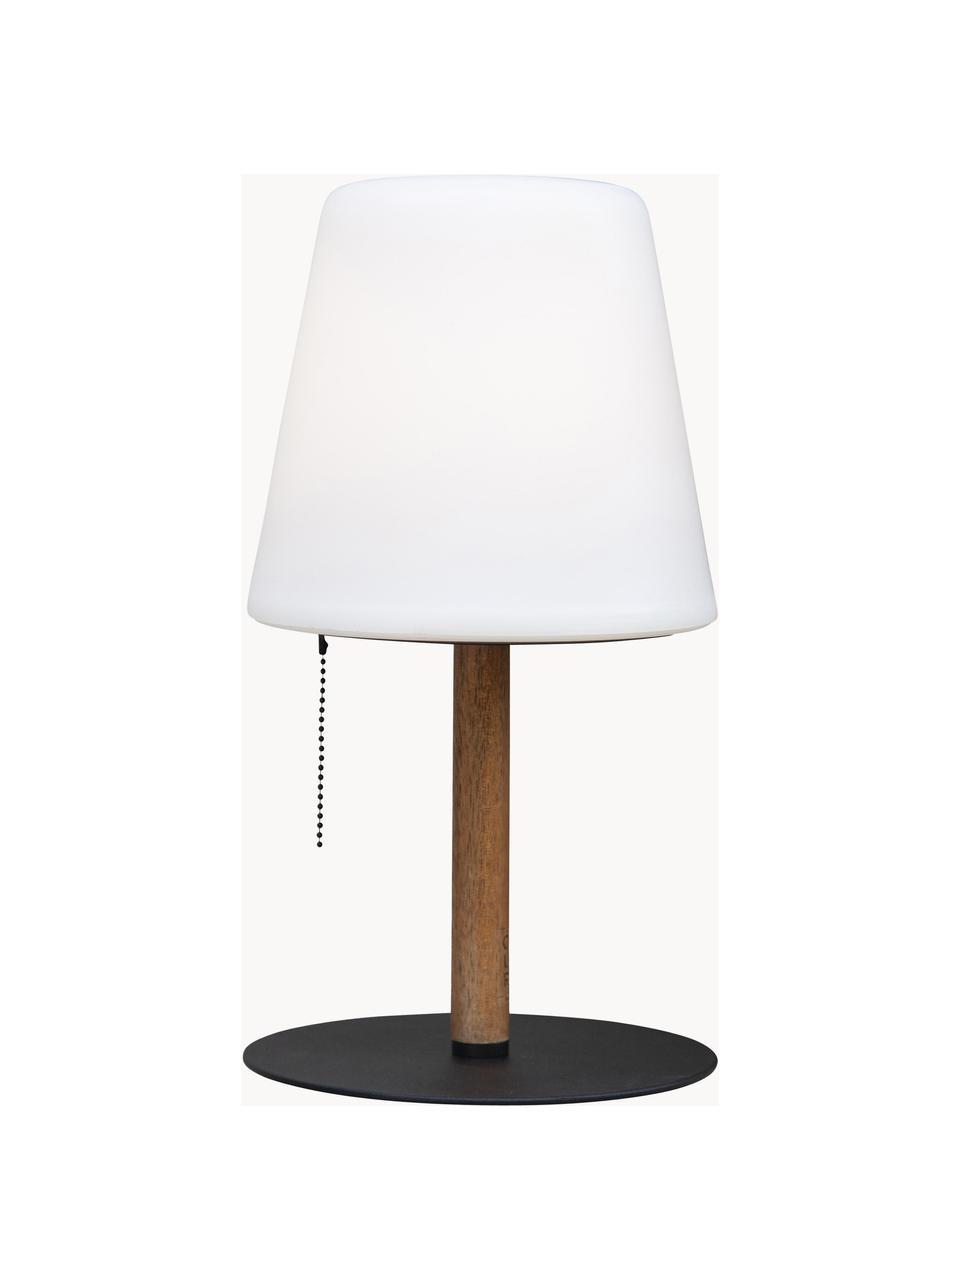 Lámpara de mesa pequeña LED regulable Northern, con efecto fuego, Pantalla: plástico, Cable: plástico, Blanco, marrón, negro, Ø 17 x Al 30 cm